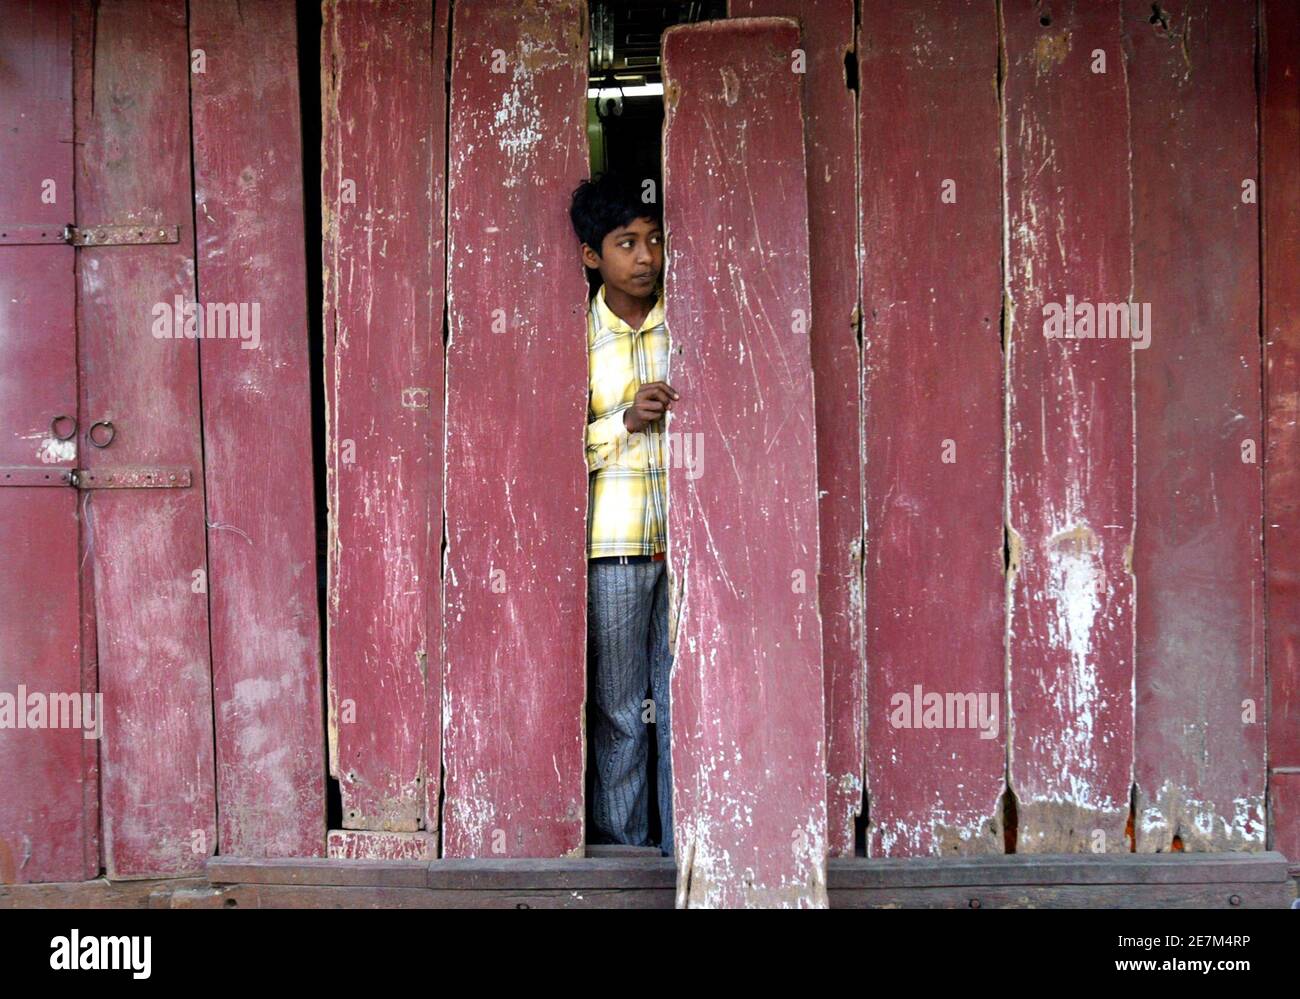 Un garçon regarde d'un magasin fermé lors d'une manifestation contre la violence à Nandigram, dans la ville indienne de Siliguri, dans le nord-est du pays, le 16 mars 2007. Une grève a appelé à protester contre le meurtre de 14 villageois manifestant contre un centre industriel prévu qui a fermé vendredi des écoles, des bureaux et des magasins dans l'État indien du Bengale occidental contrôlé par les communistes. REUTERS/Rupak de Chowdhuri (INDE) Banque D'Images